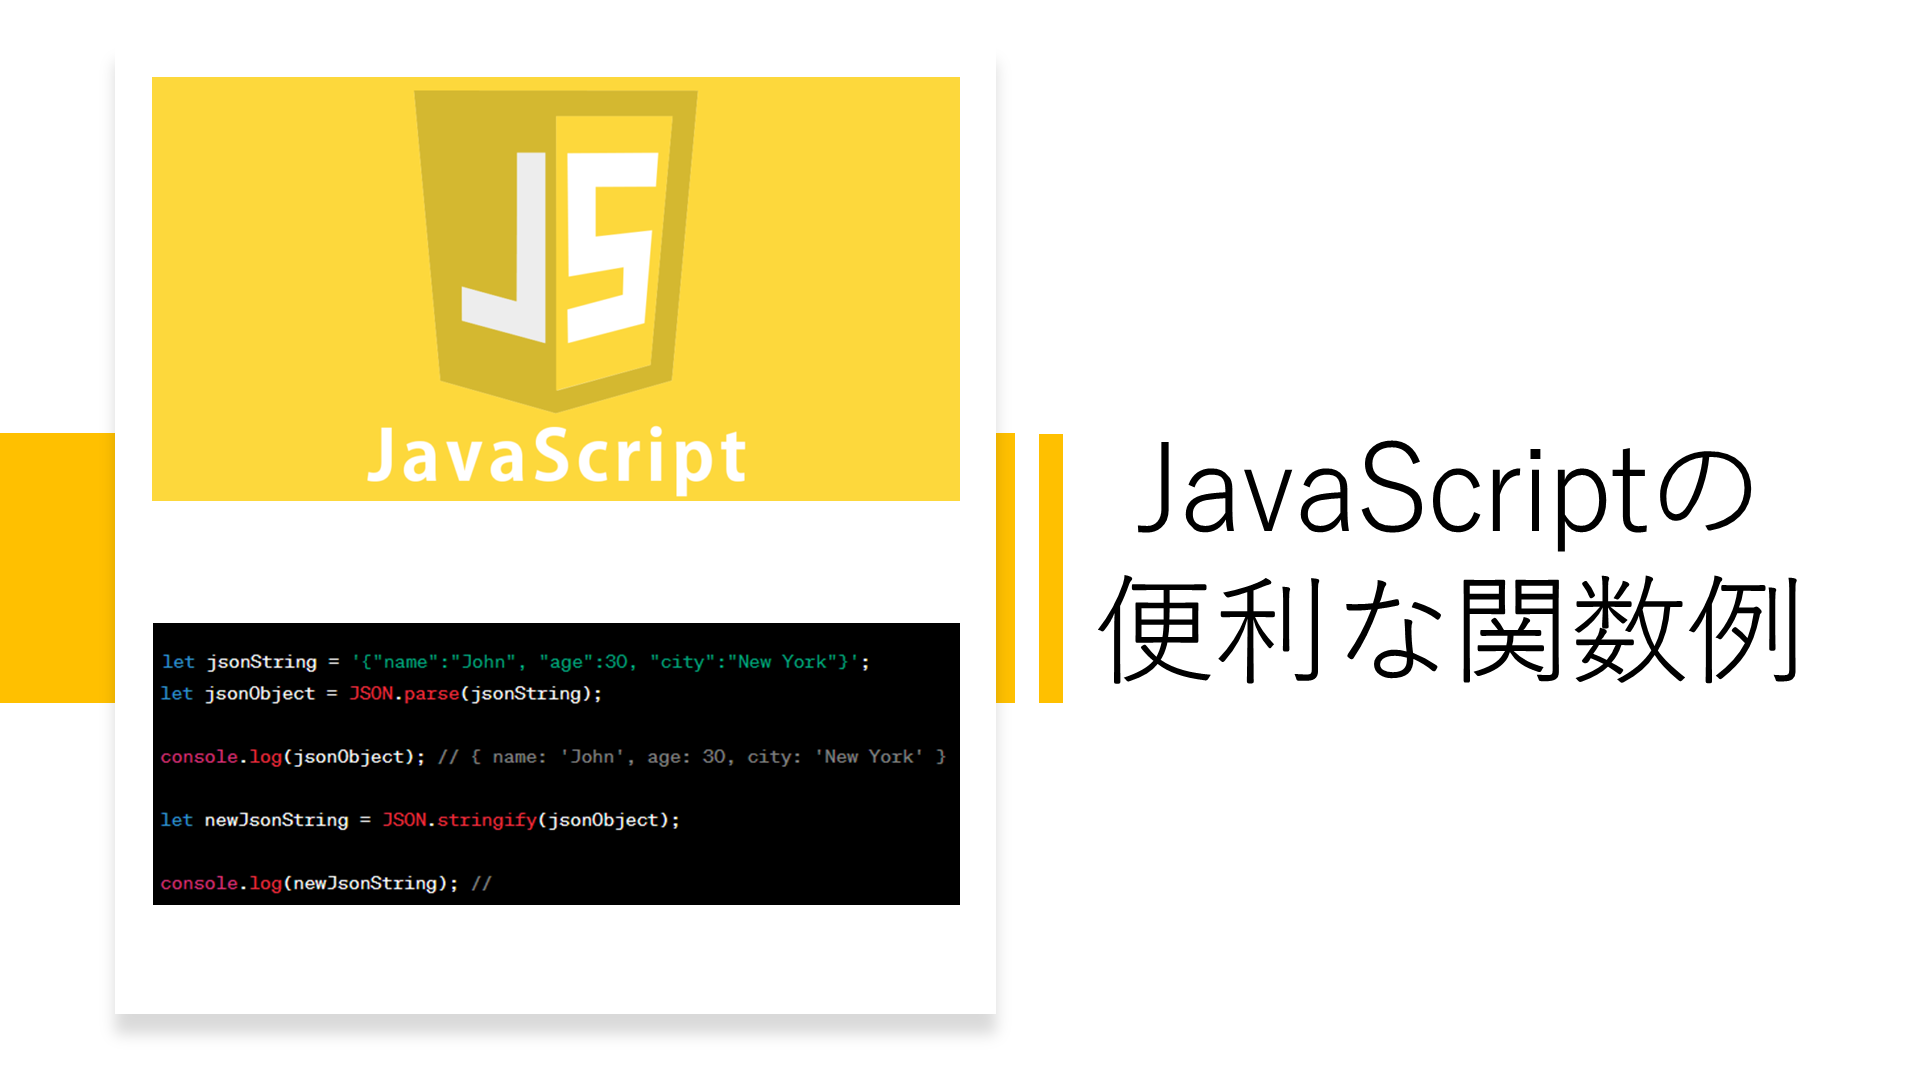 あなたのJavaScriptコーディングを効率化するための関数ガイド